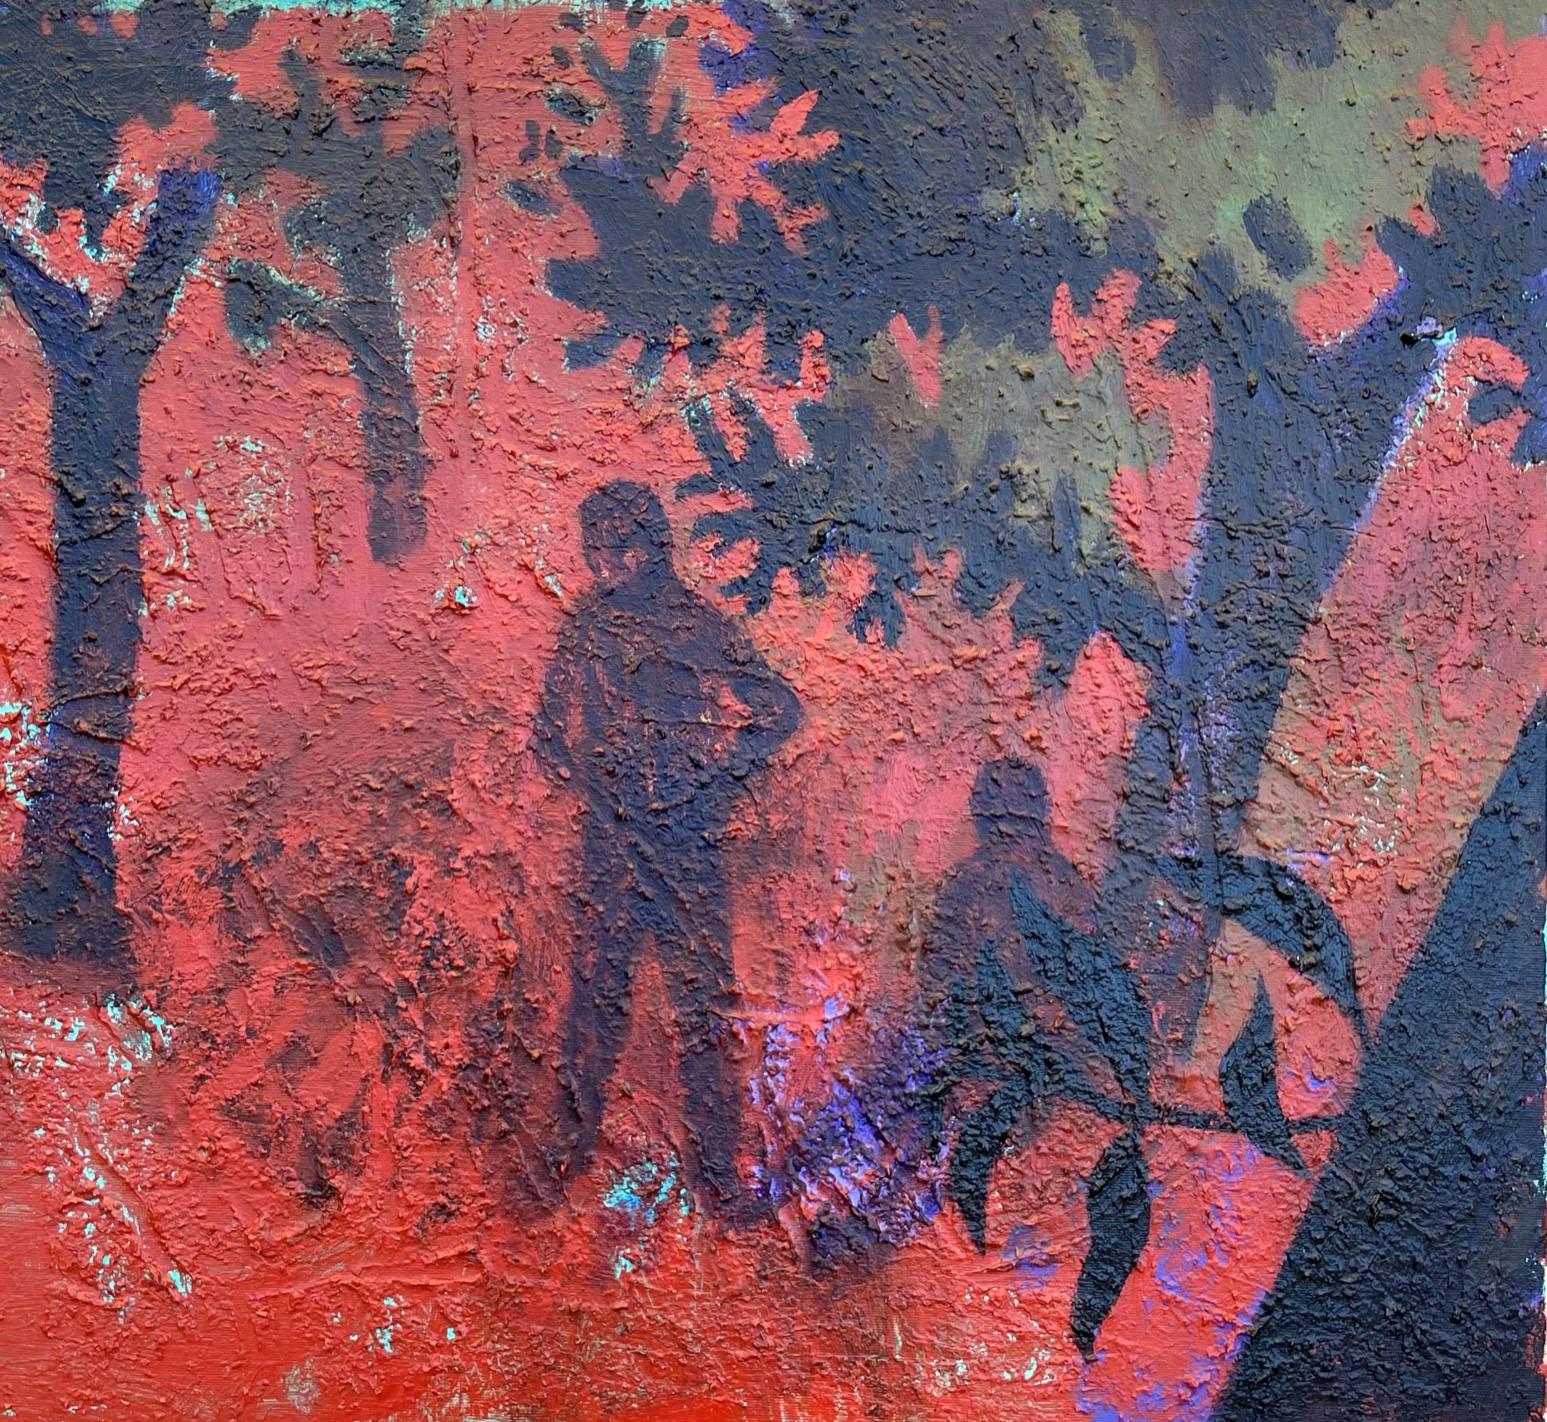 Lovers in an Orchard – Zeitgenössische Kunst, Rot, Natur, Paar, 21. Jahrhundert – Painting von Alexandru Rădvan